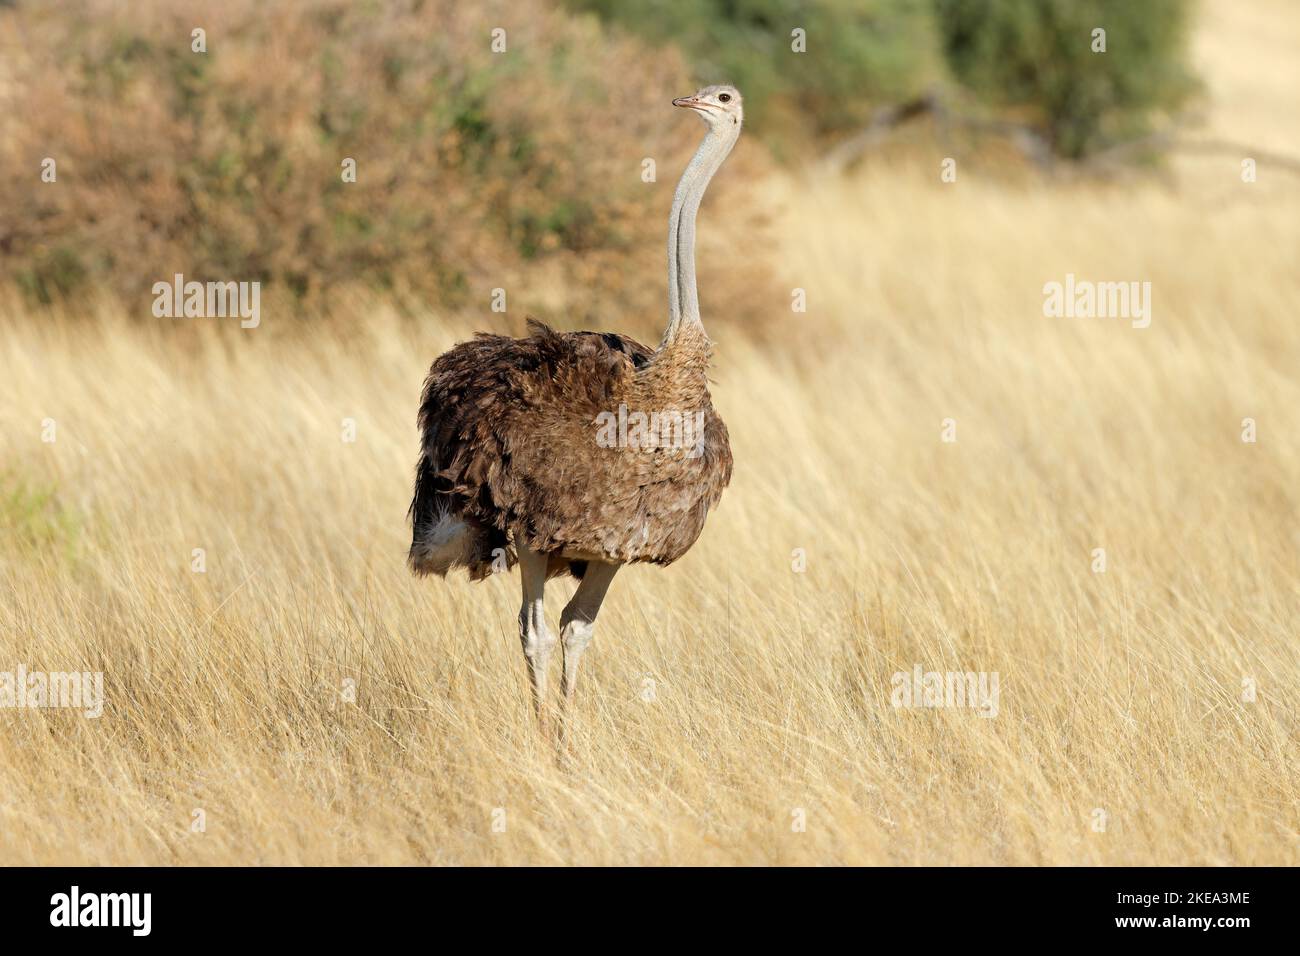 Weiblicher Strauß (Struthio camelus) in trockenem Grasland, Kalahari-Wüste, Südafrika Stockfoto